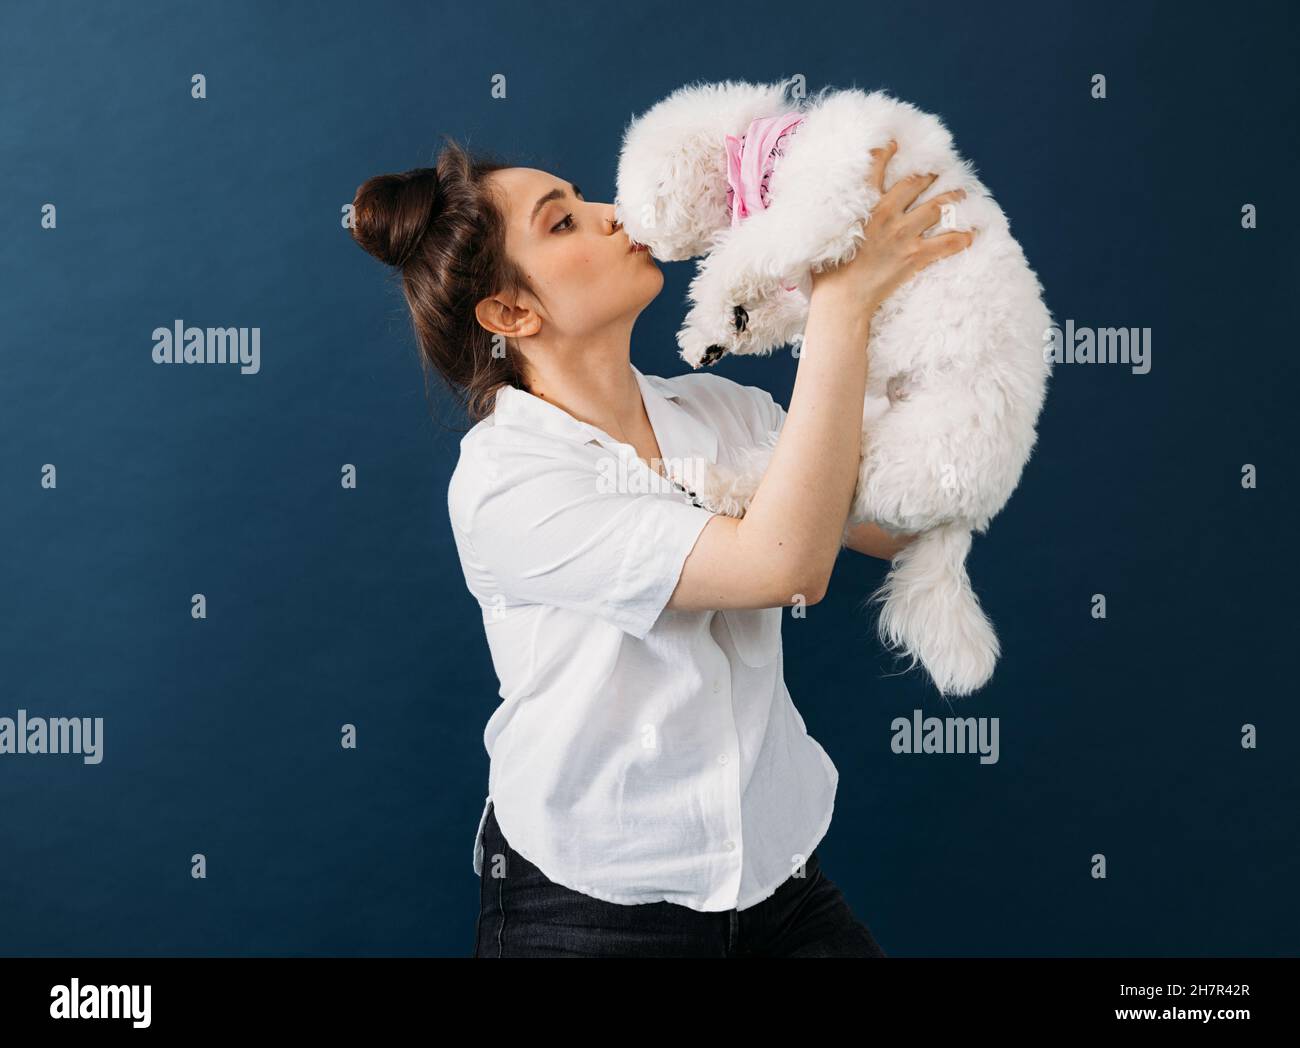 Vue latérale d'une femme tenant et embrassant son petit chien blanc en studio Banque D'Images